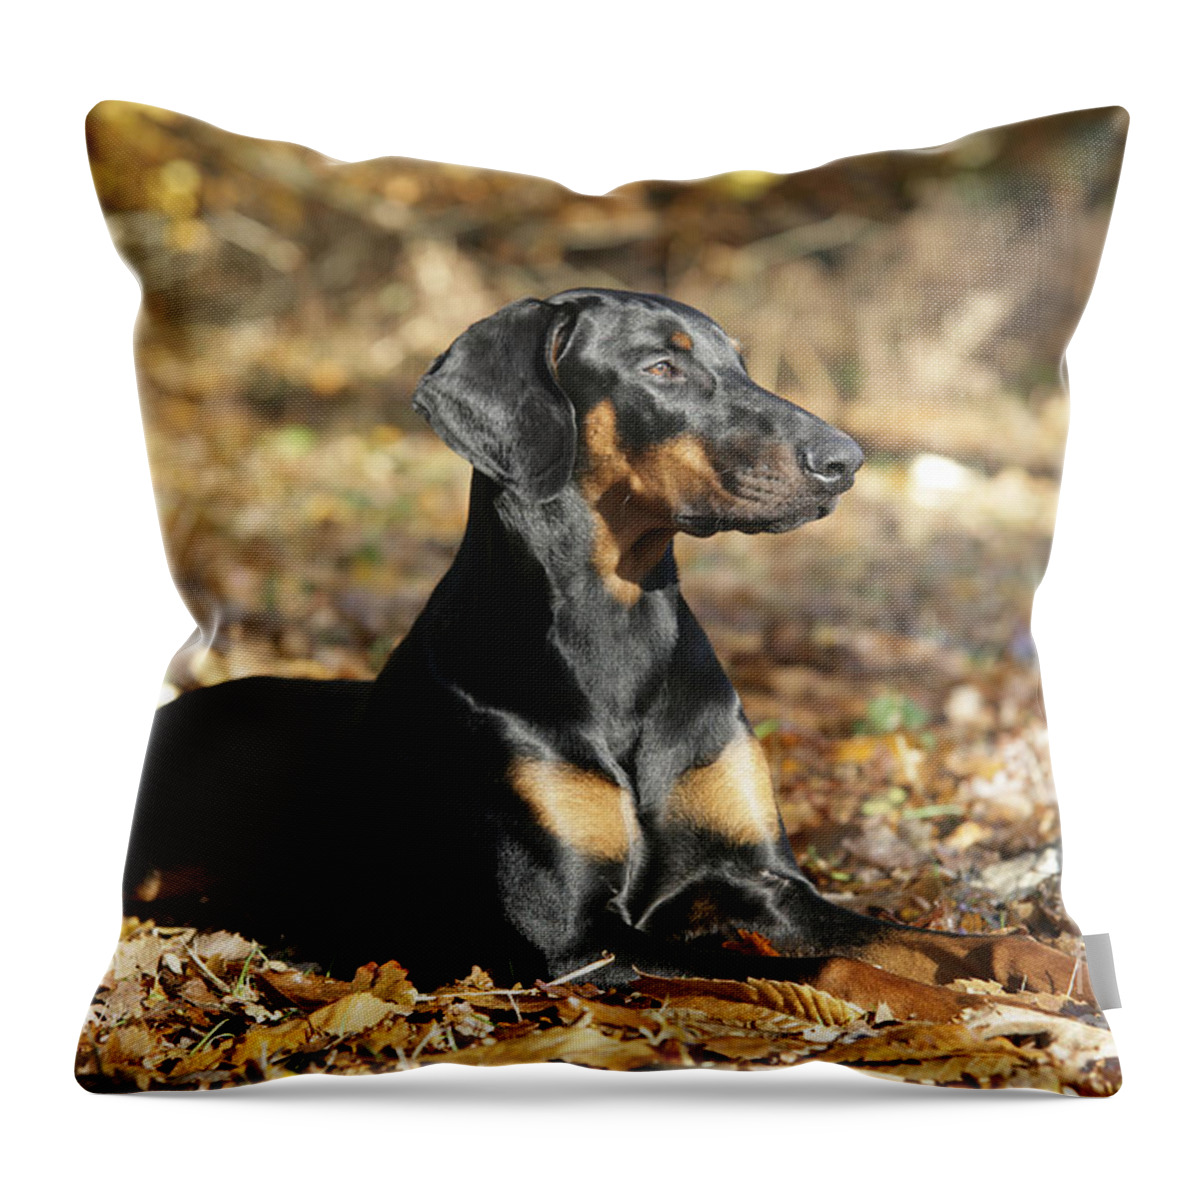 Doberman Pinscher Throw Pillow featuring the photograph Dobermann Dog by John Daniels